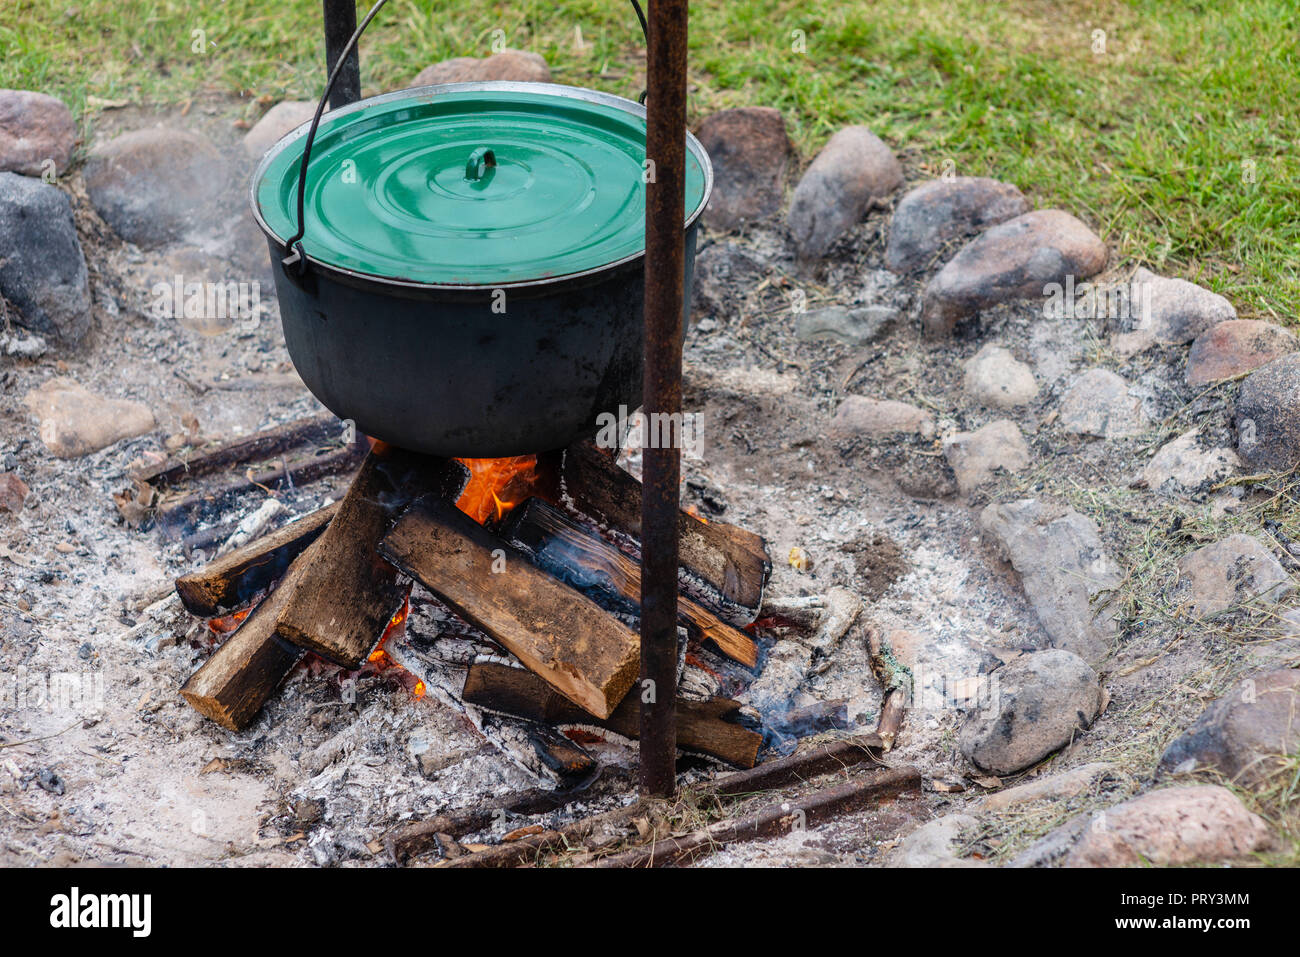 Essen Topf hängt über brennendes Feuer Stockfotografie - Alamy